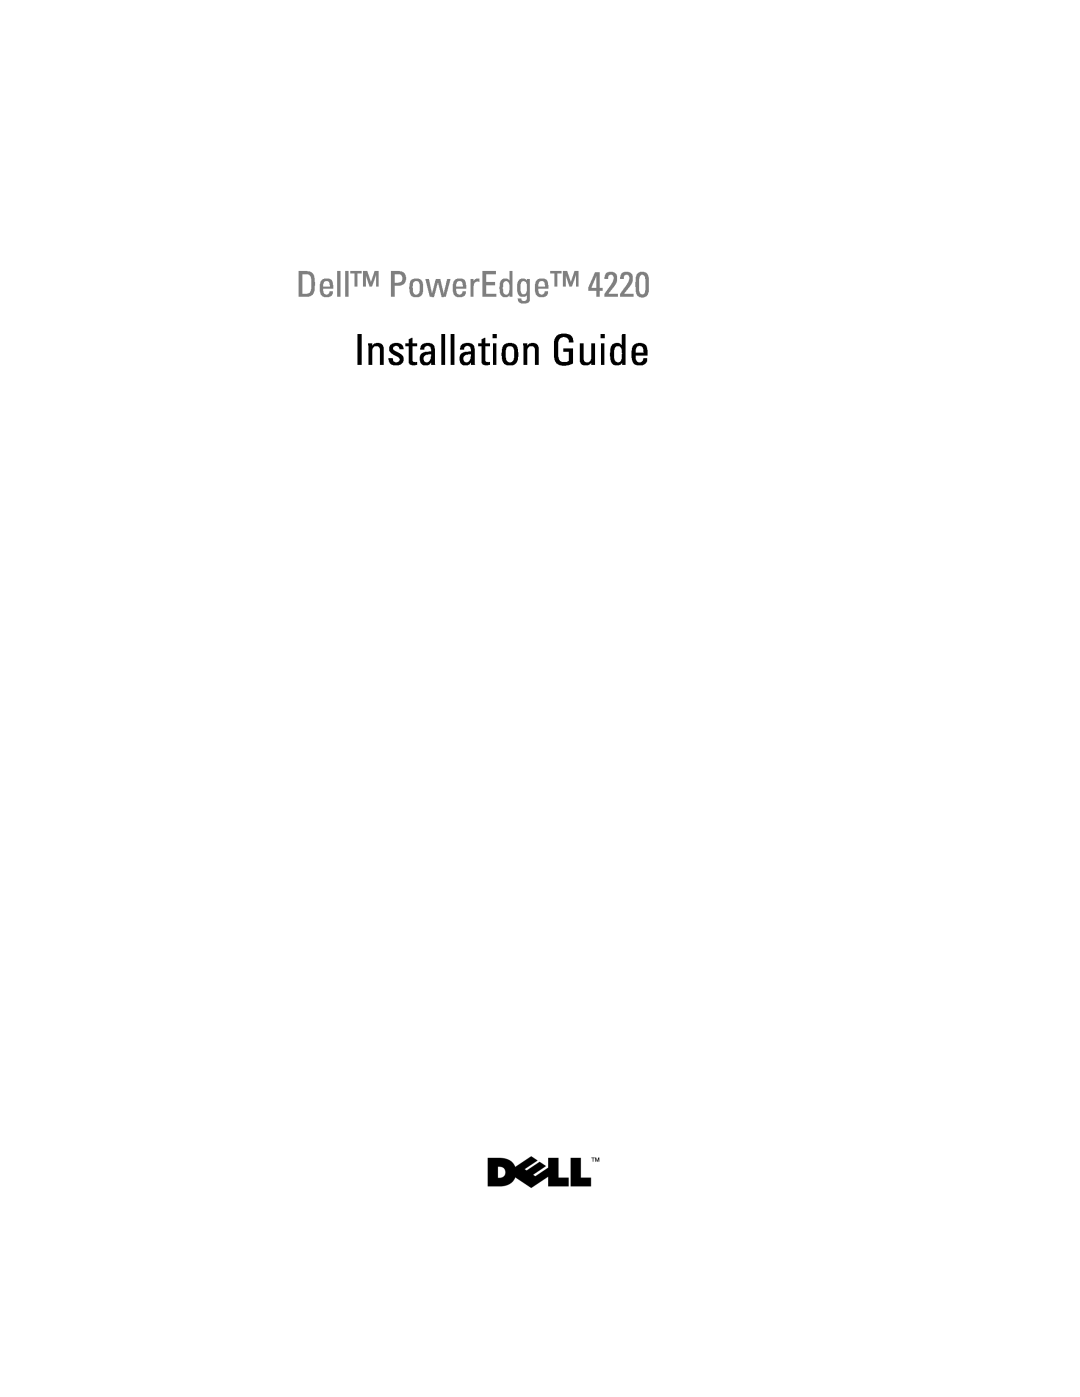 Dell 4220 manual Installation Guide, Dell PowerEdge 